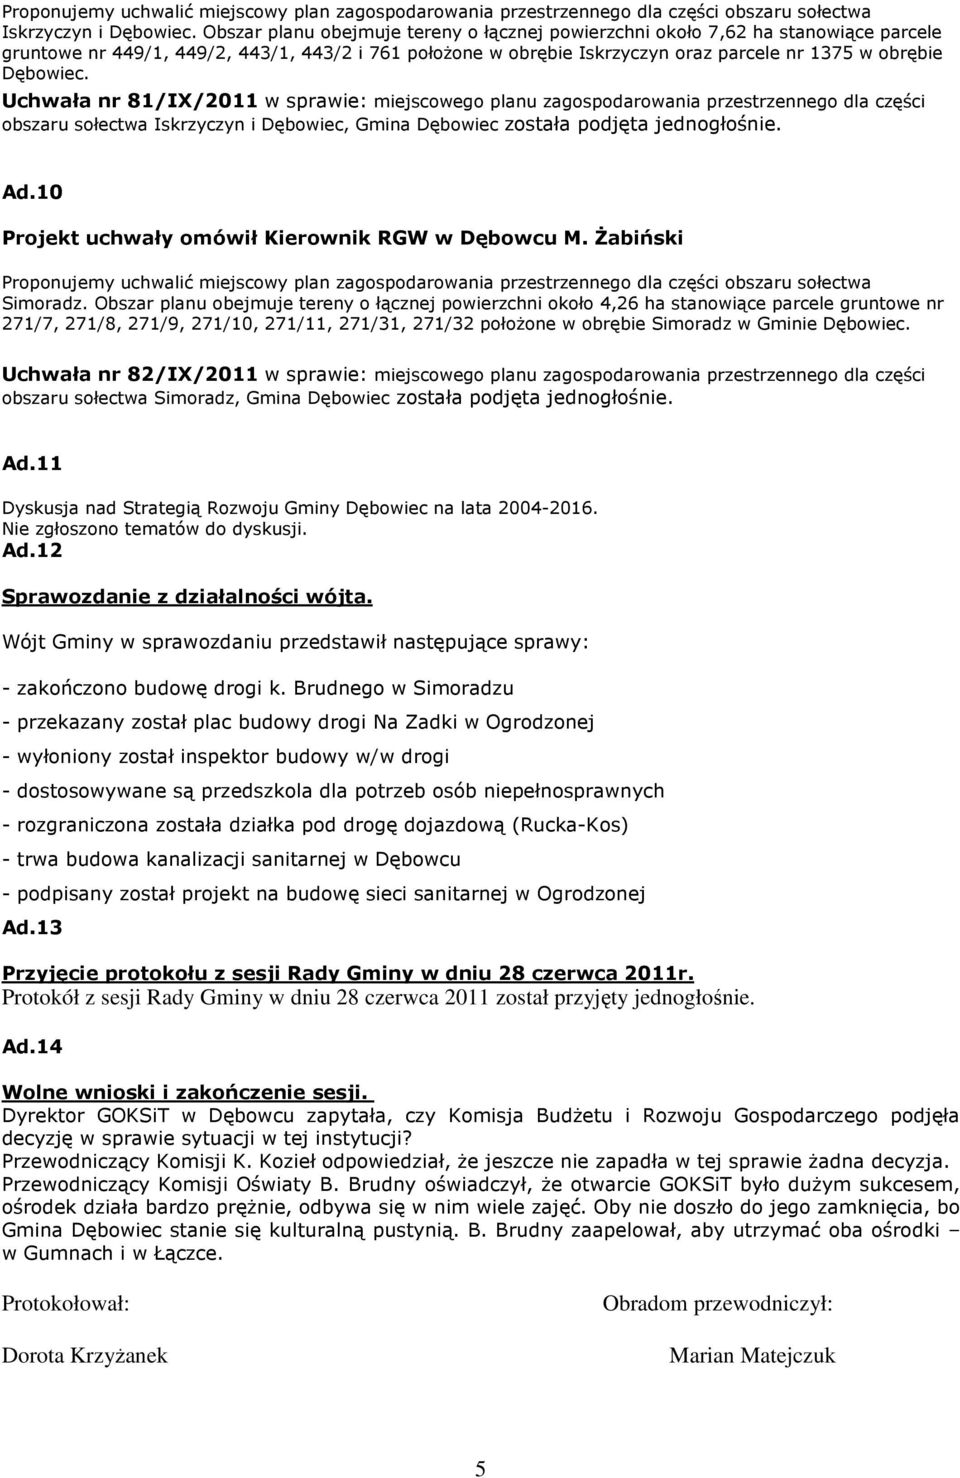 Uchwała nr 81/IX/2011 w sprawie: miejscowego planu zagospodarowania przestrzennego dla części obszaru sołectwa Iskrzyczyn i Dębowiec, Gmina Dębowiec została podjęta jednogłośnie. Ad.